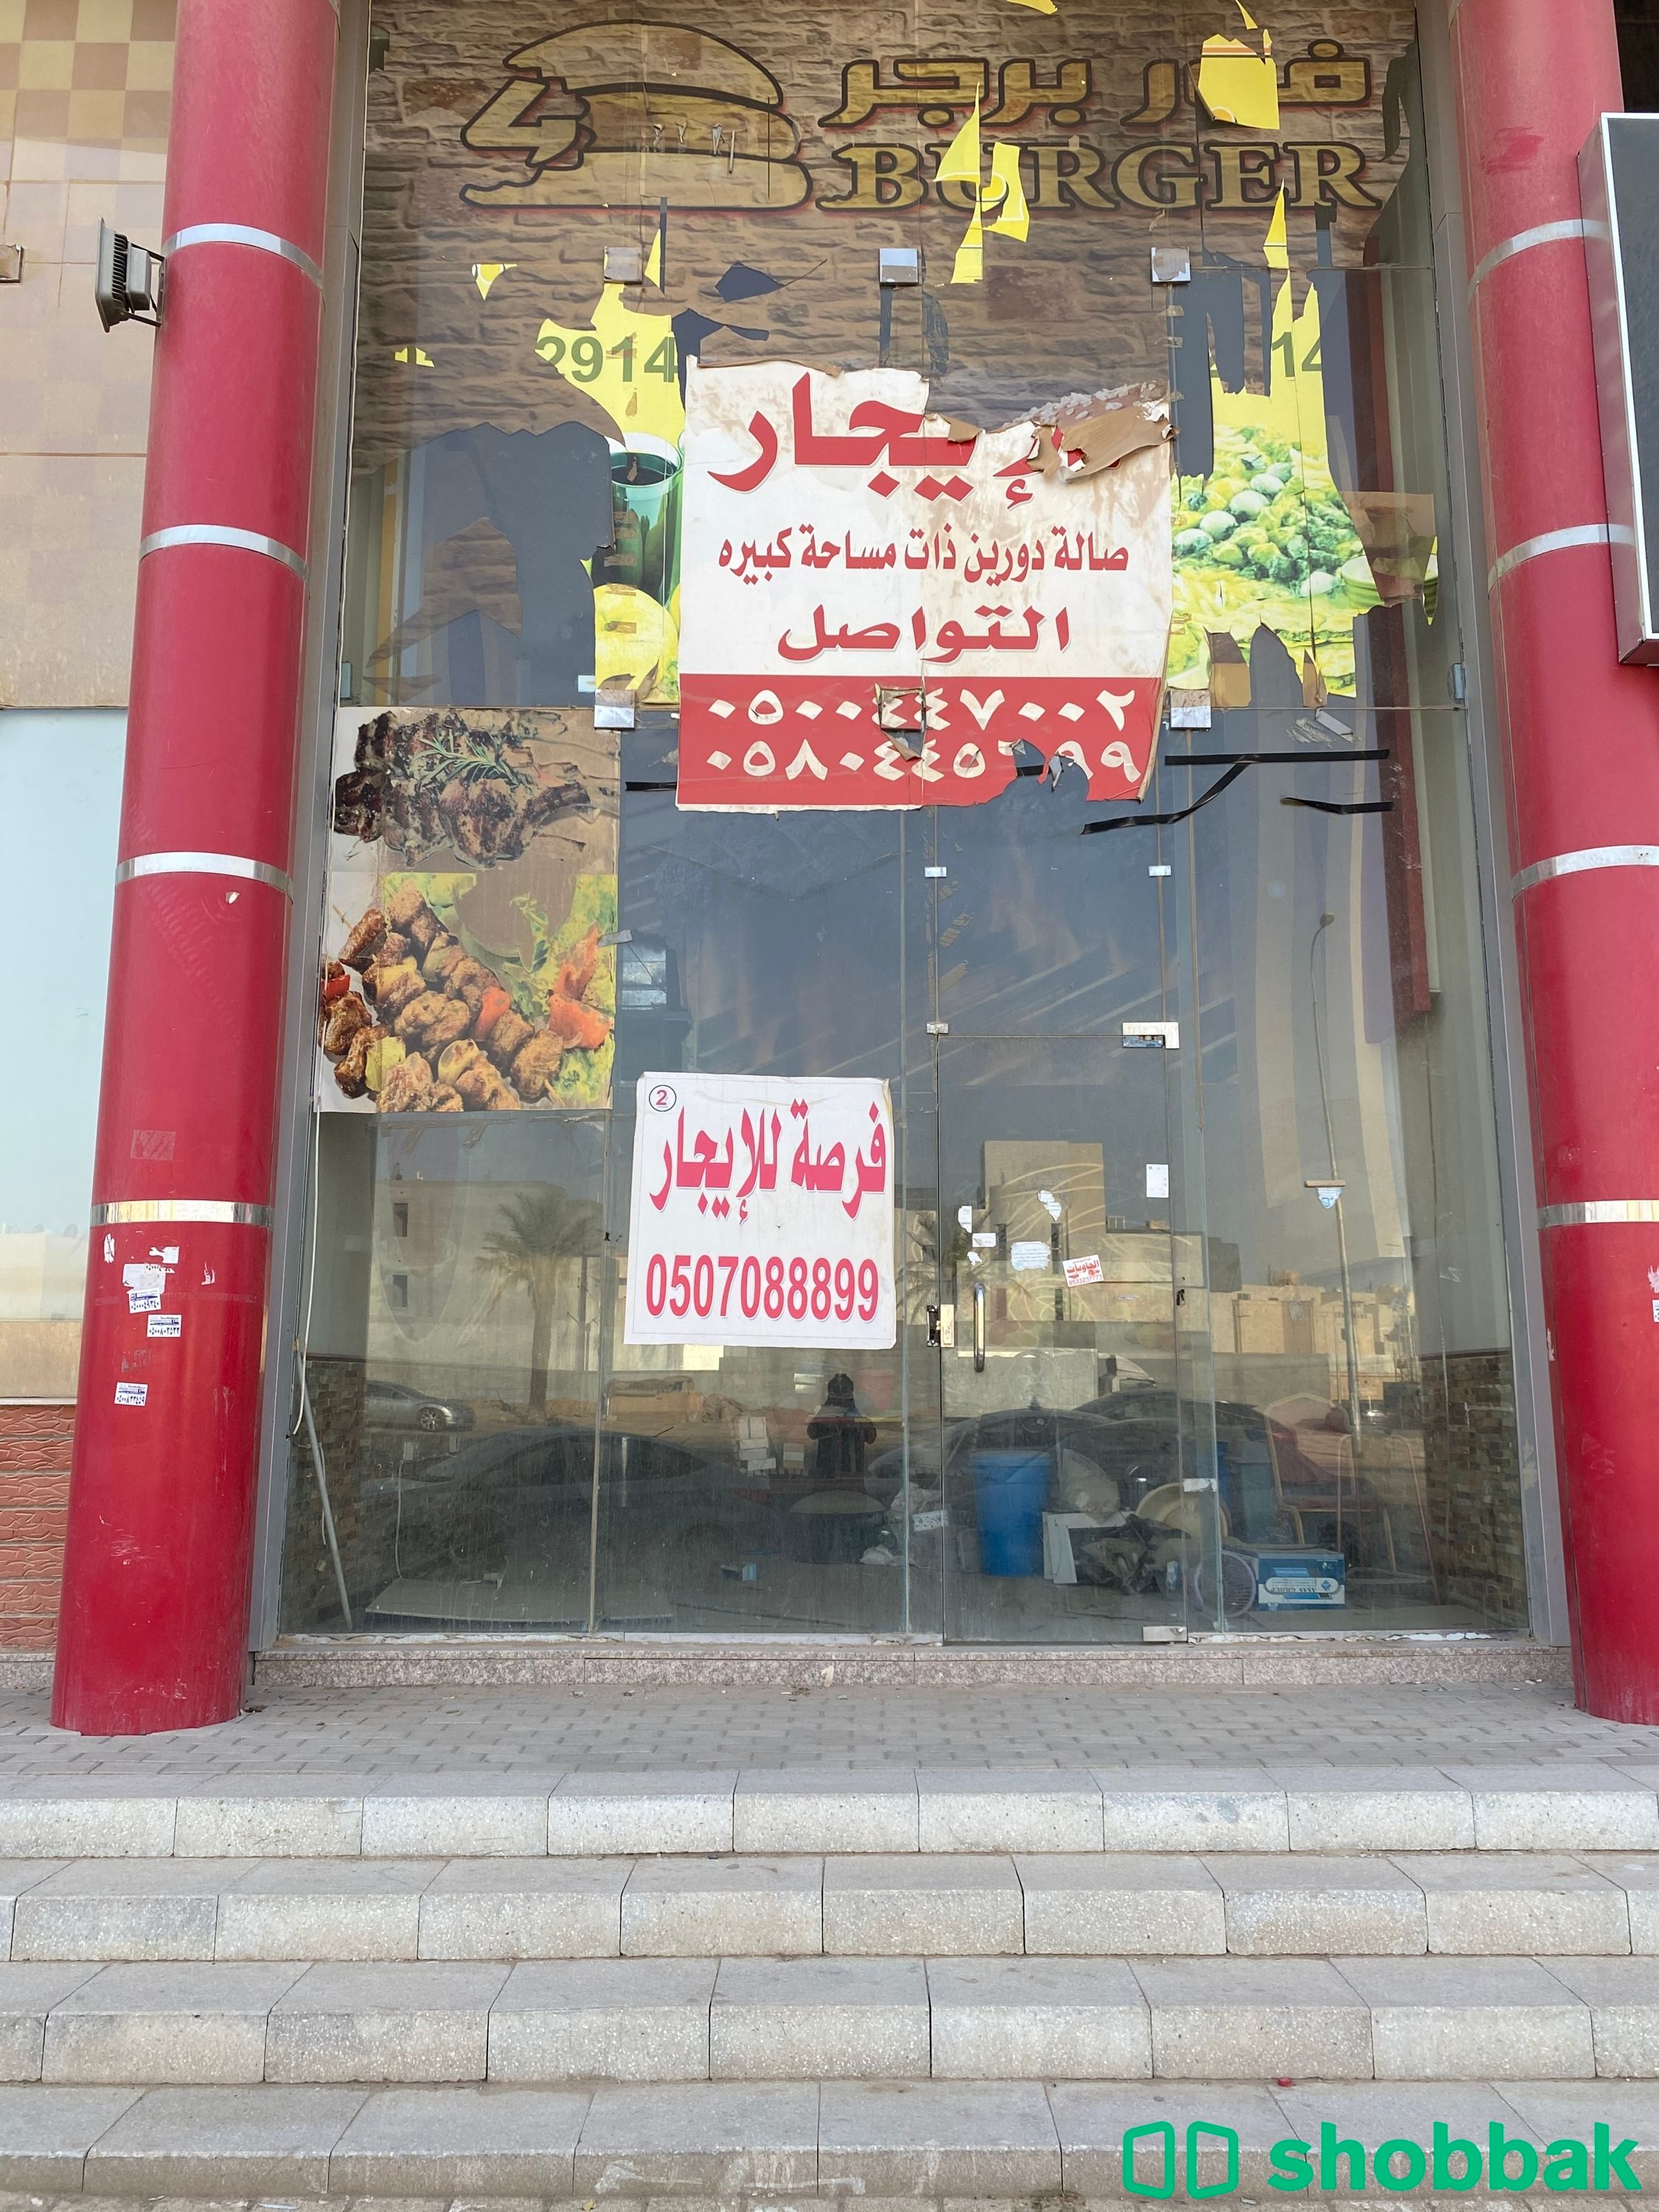 الرياض ،حي الحزم ،شارع حمزة بن عبد المطلب  Shobbak Saudi Arabia